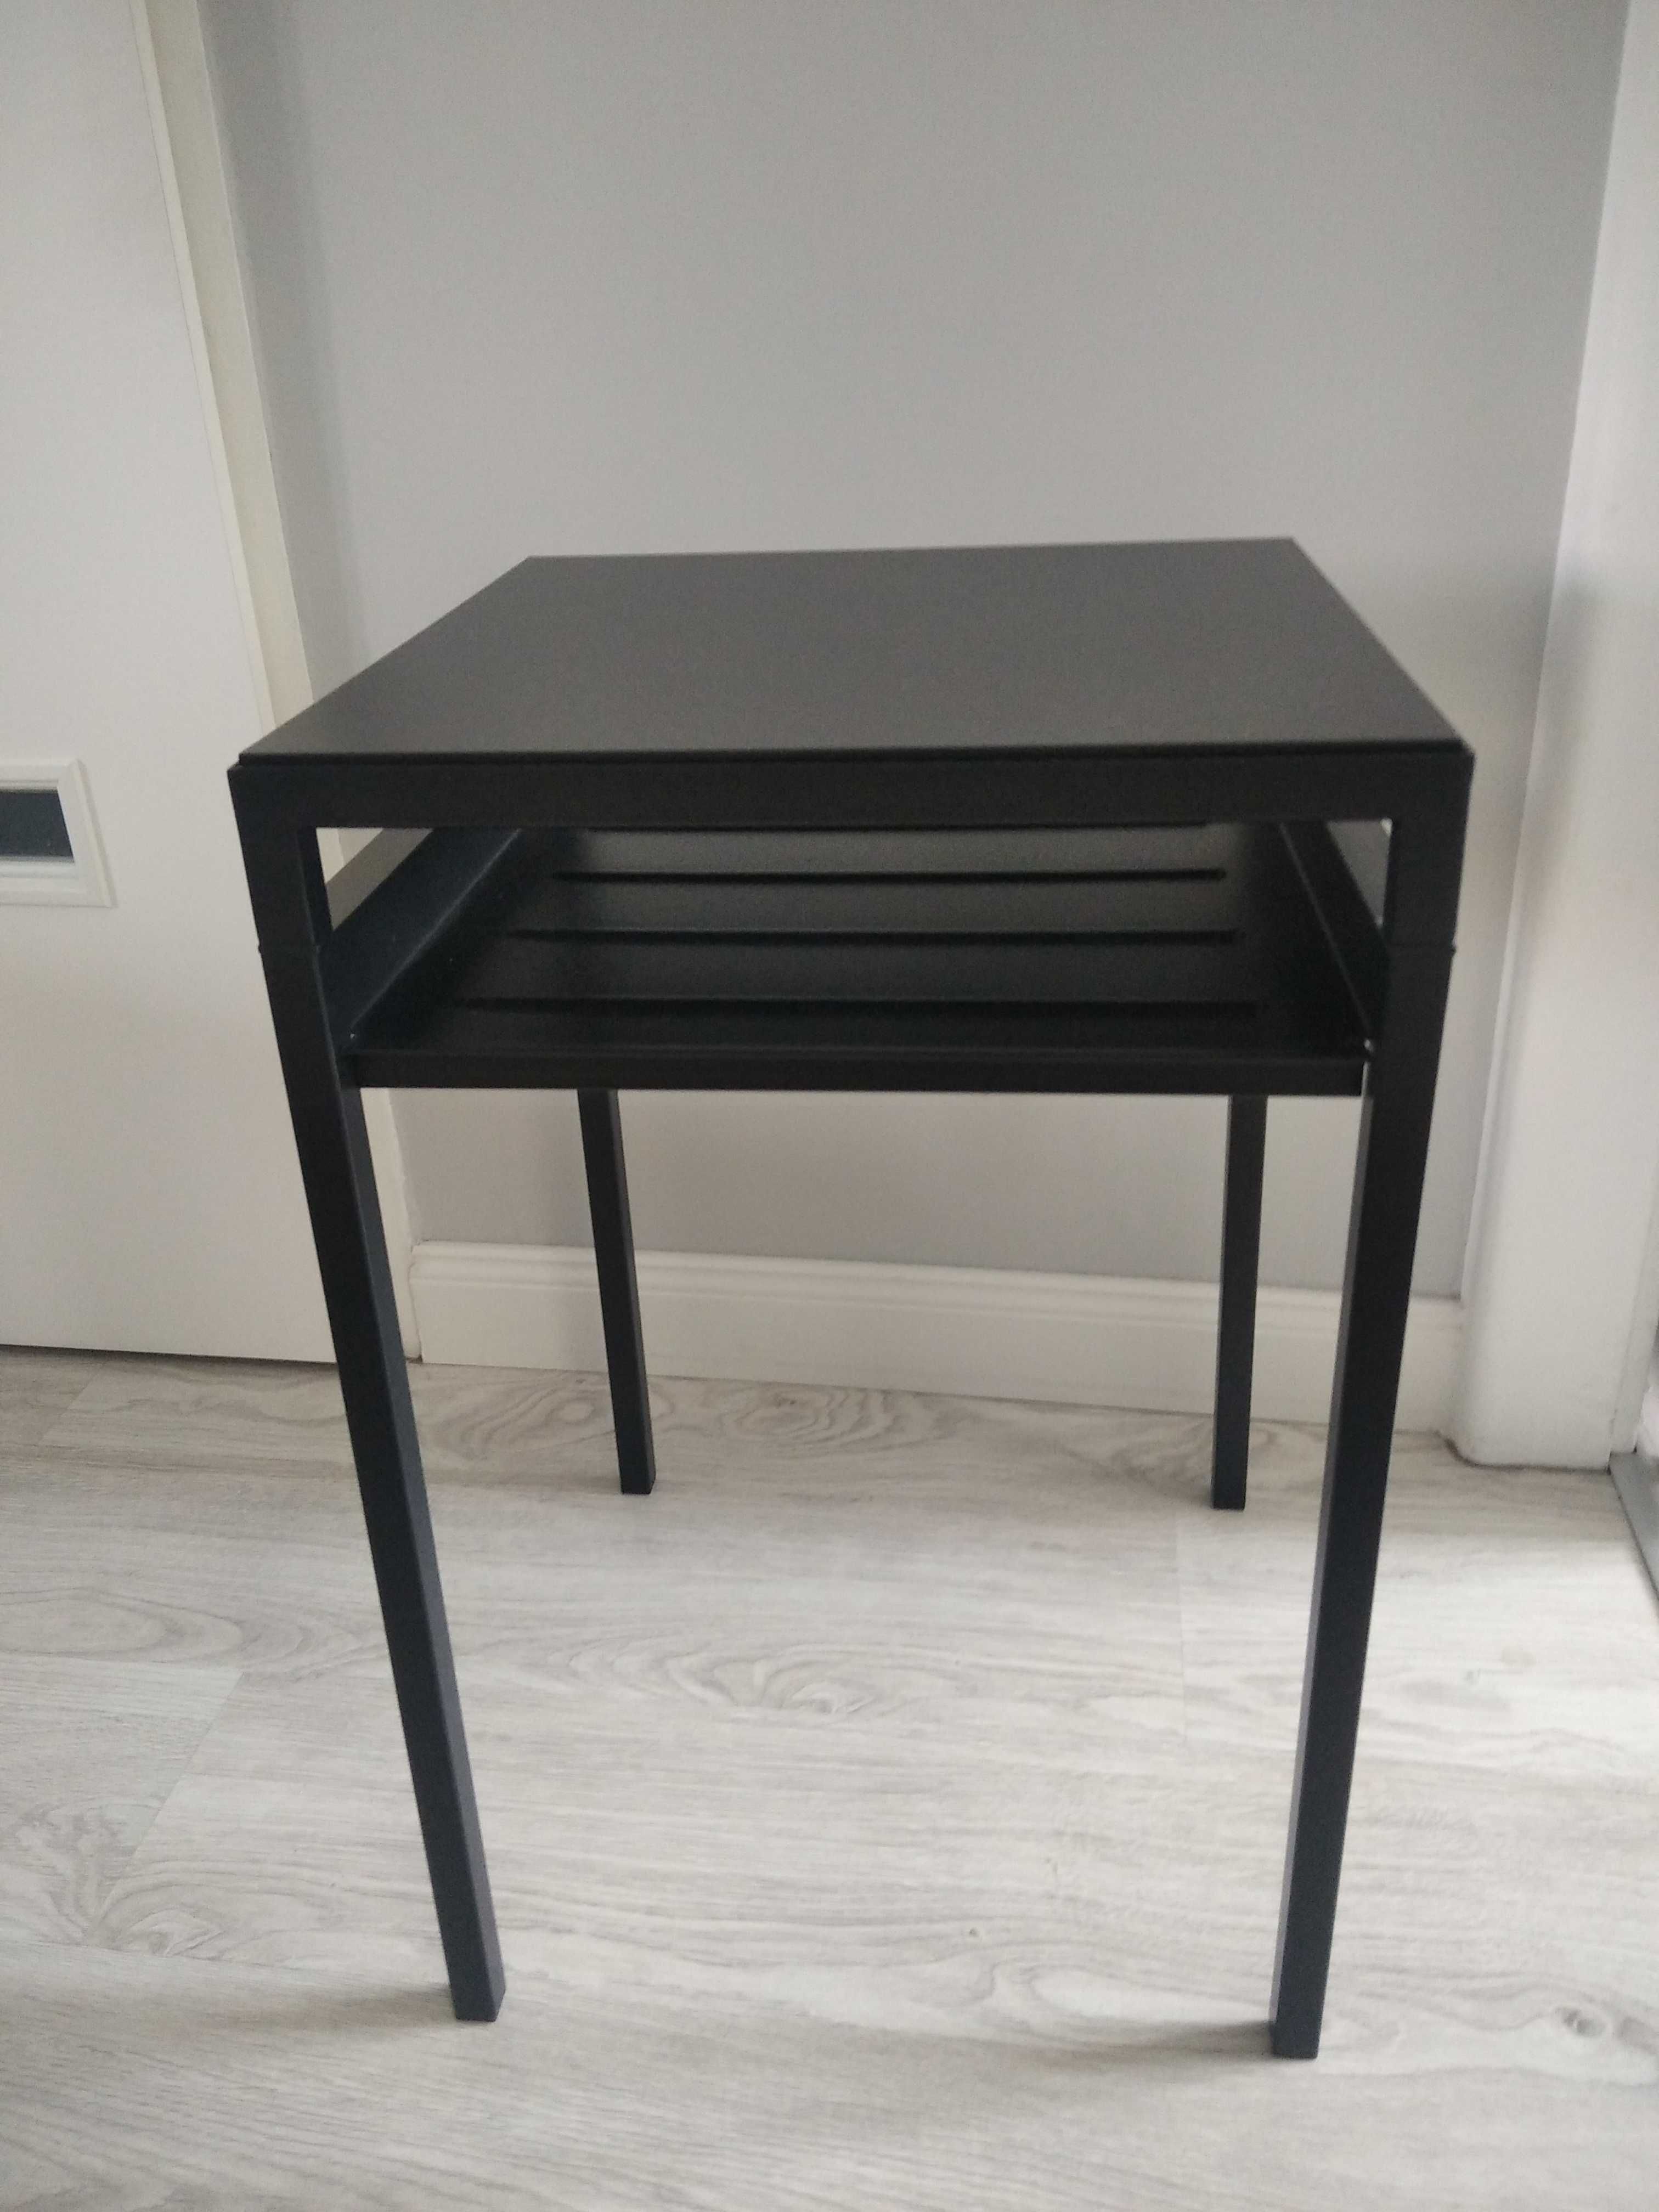 Ikea stolik metalowy czarny, dwukolorowy blat